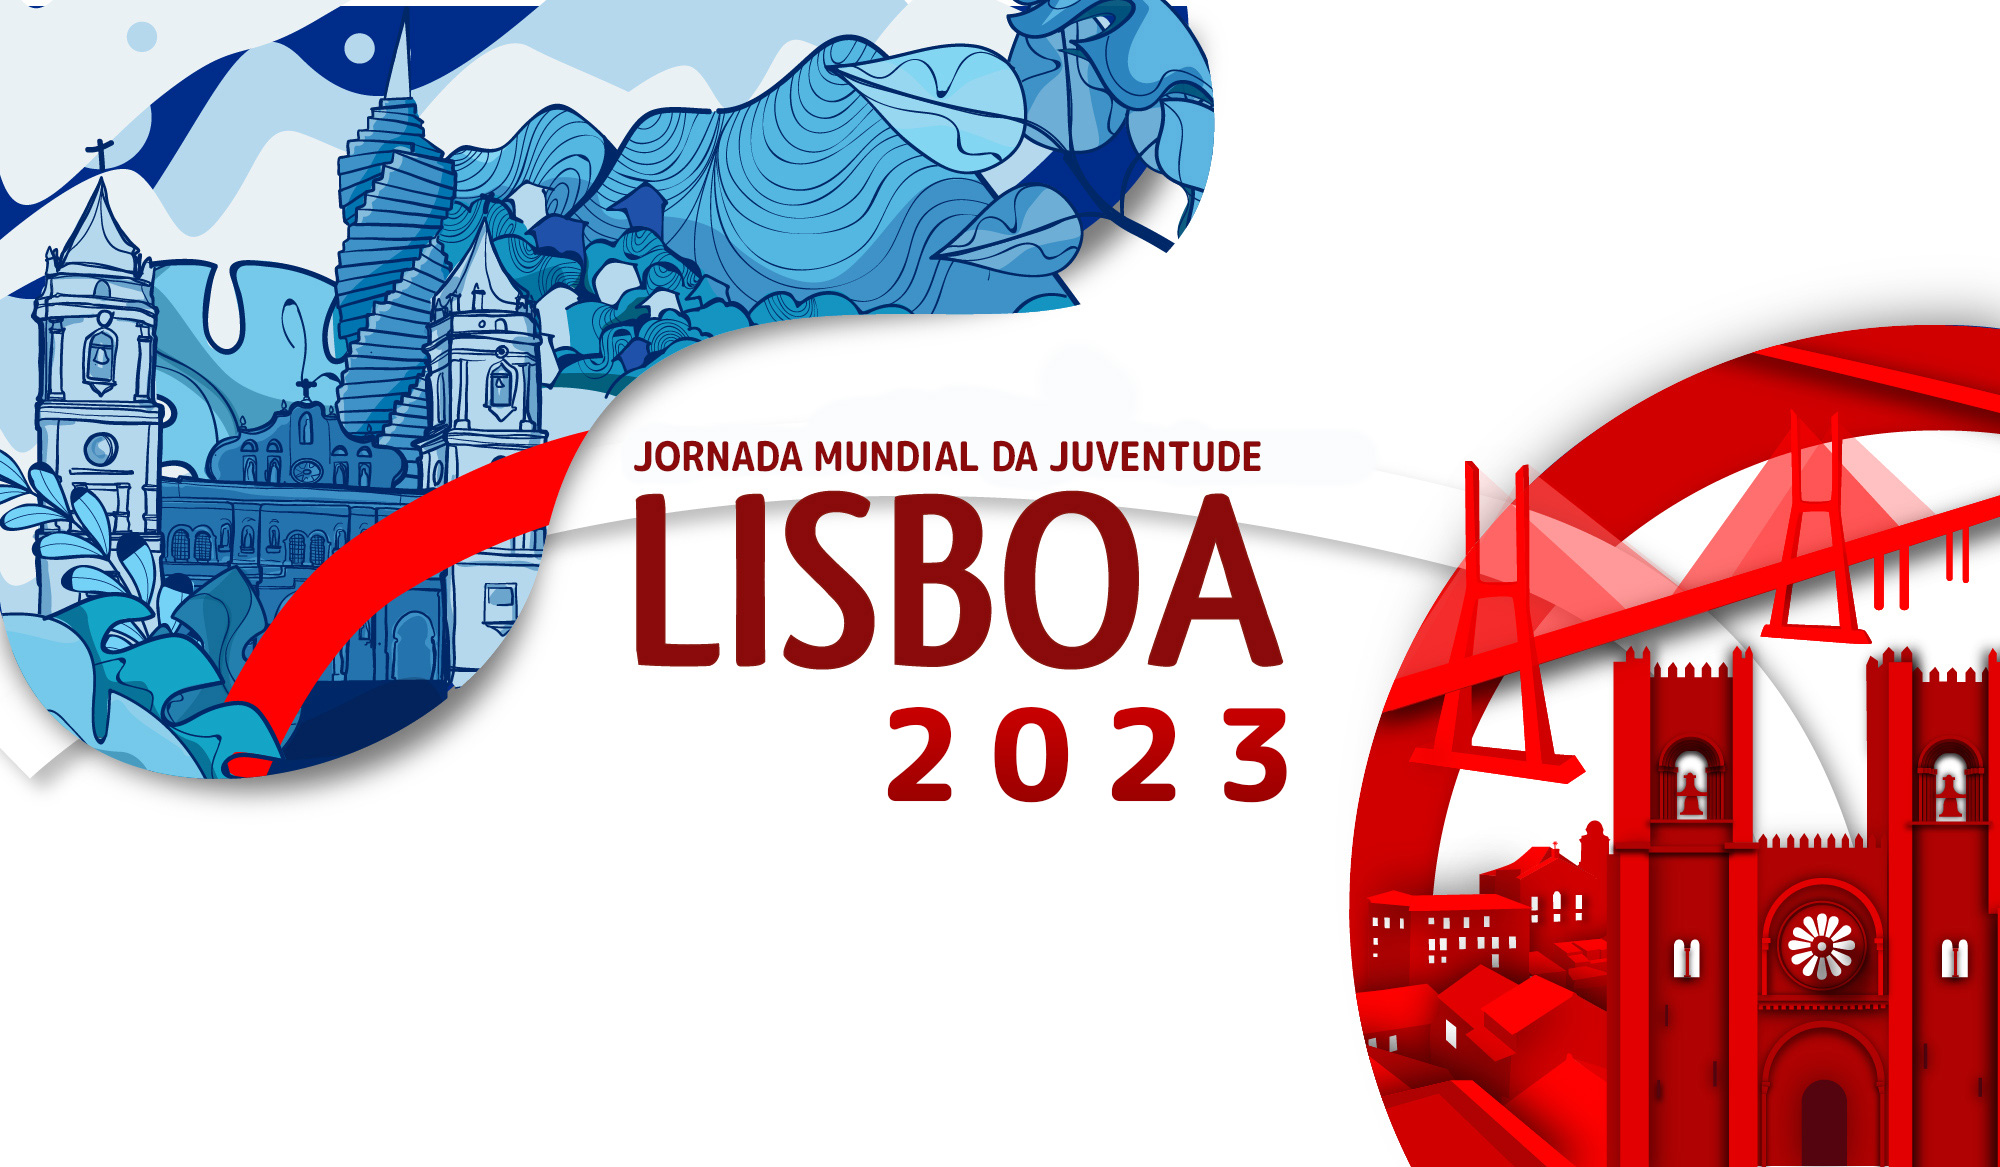 JMJ-Lisboa-2023